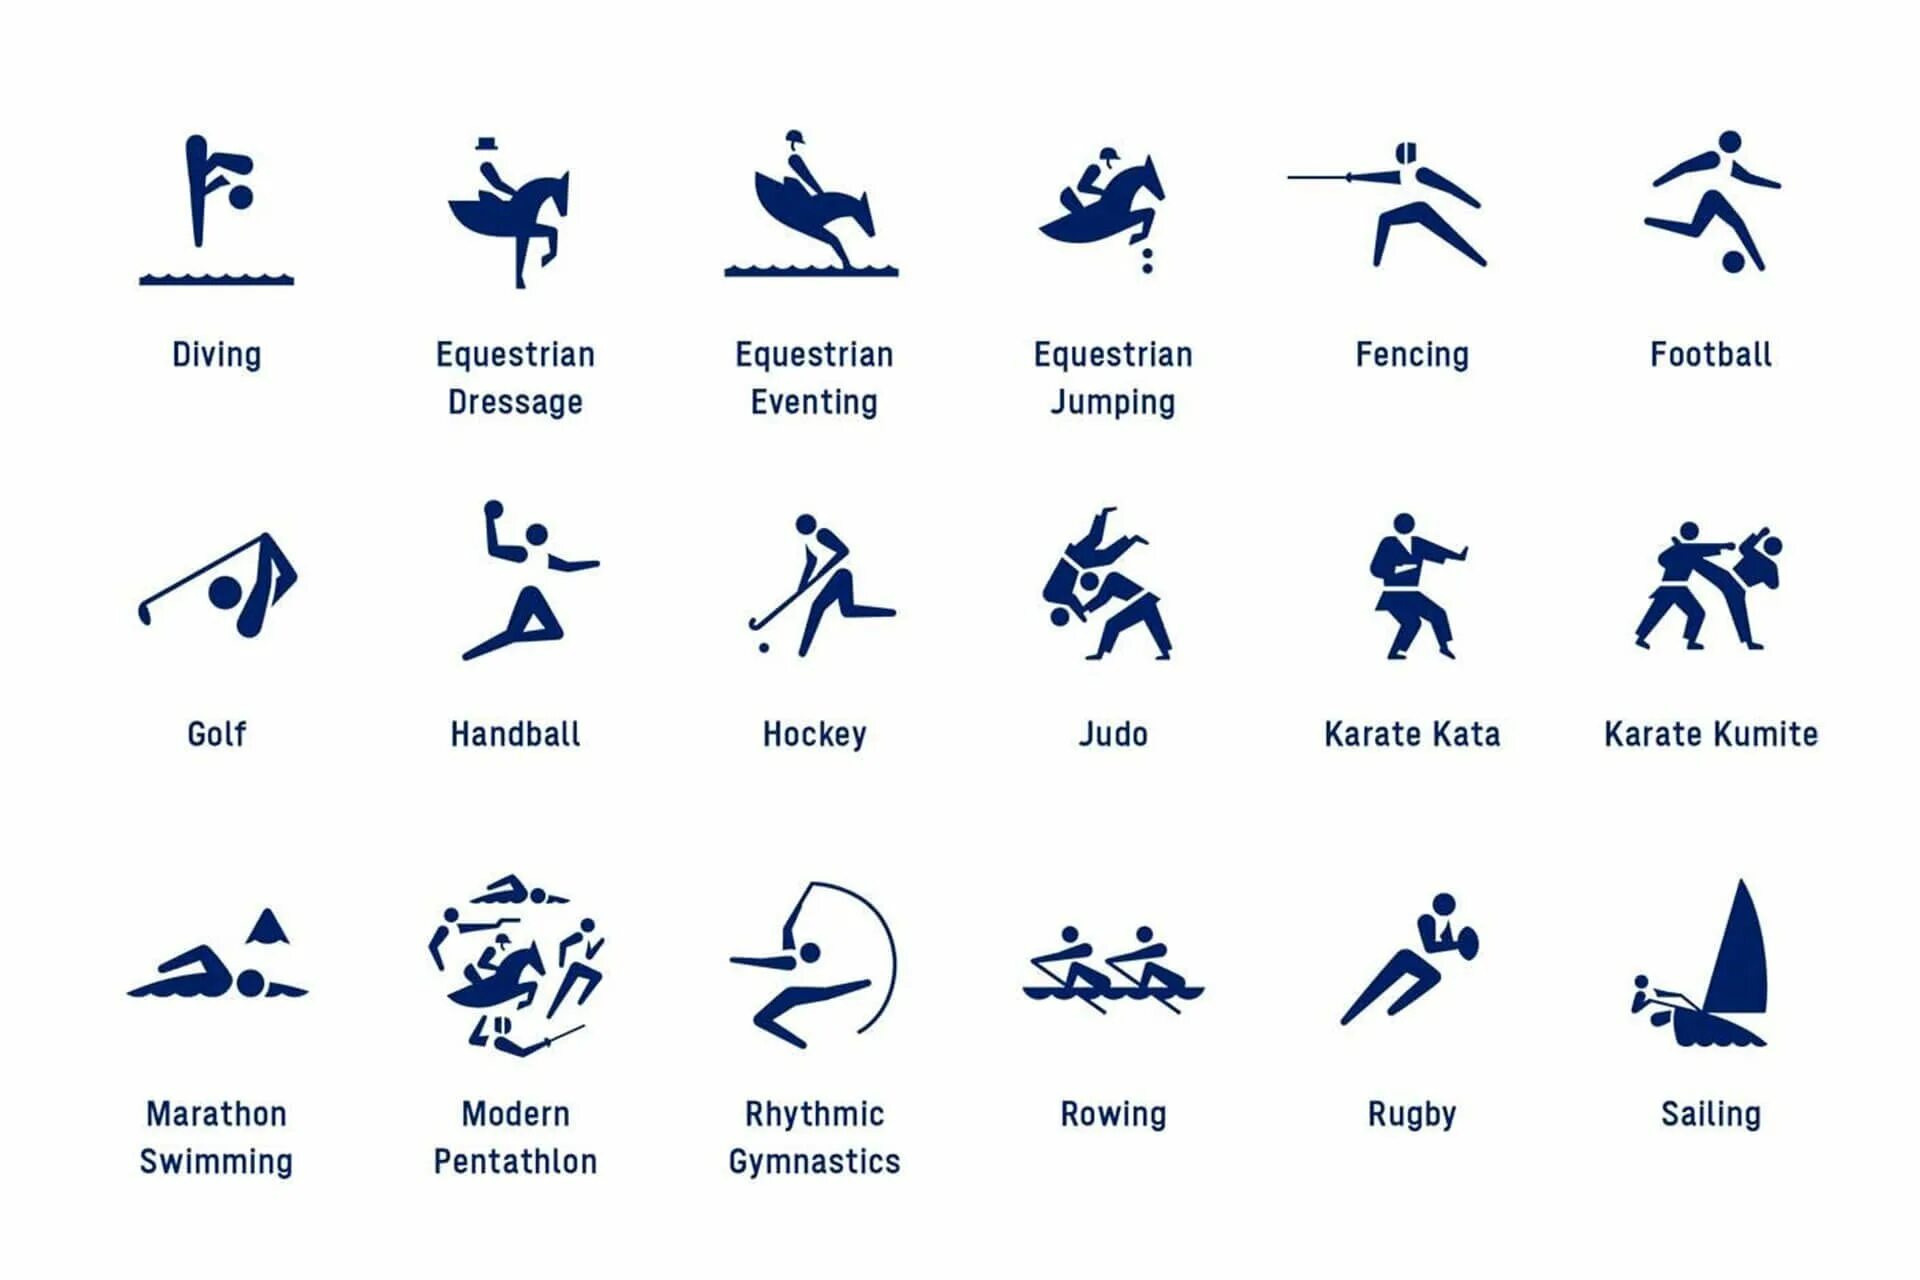 Виды спорта схема. Пиктограммы видов спорта. Пиктограммы Олимпийских видов спорта. Схематическое изображение видов спорта.